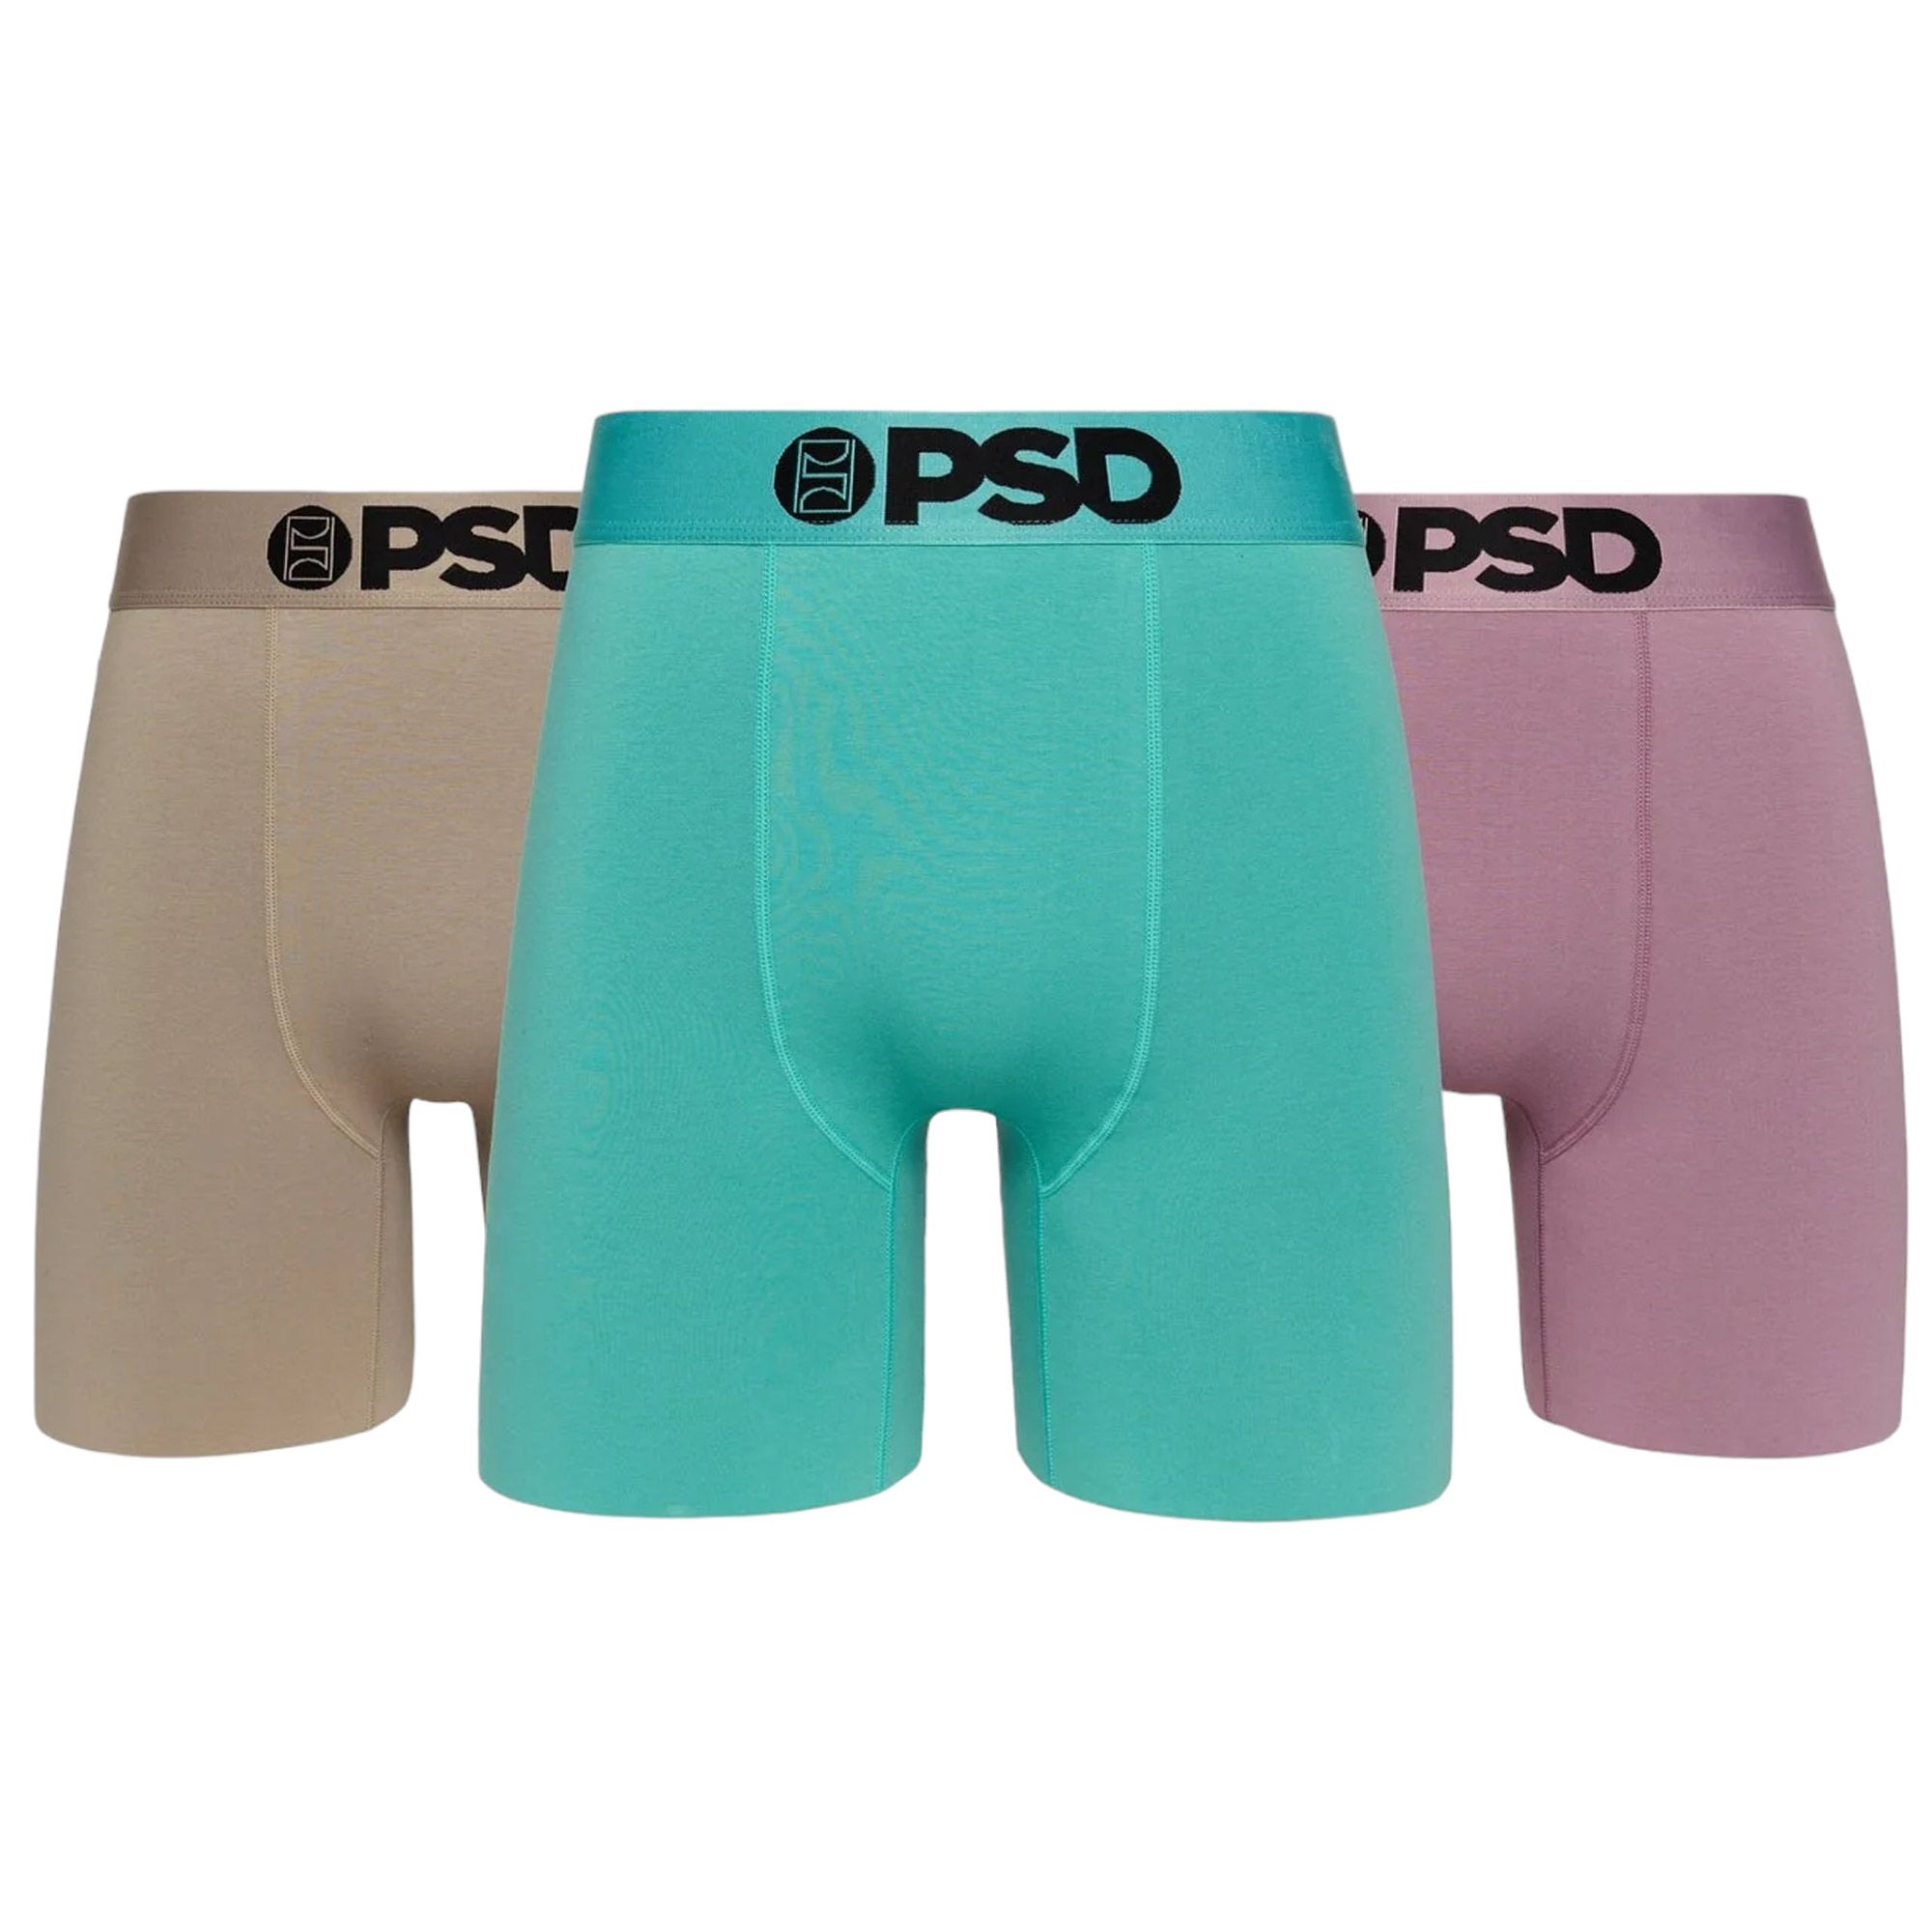 MODAL SOLIDS - PURPLE Sports Bra - PSD Underwear